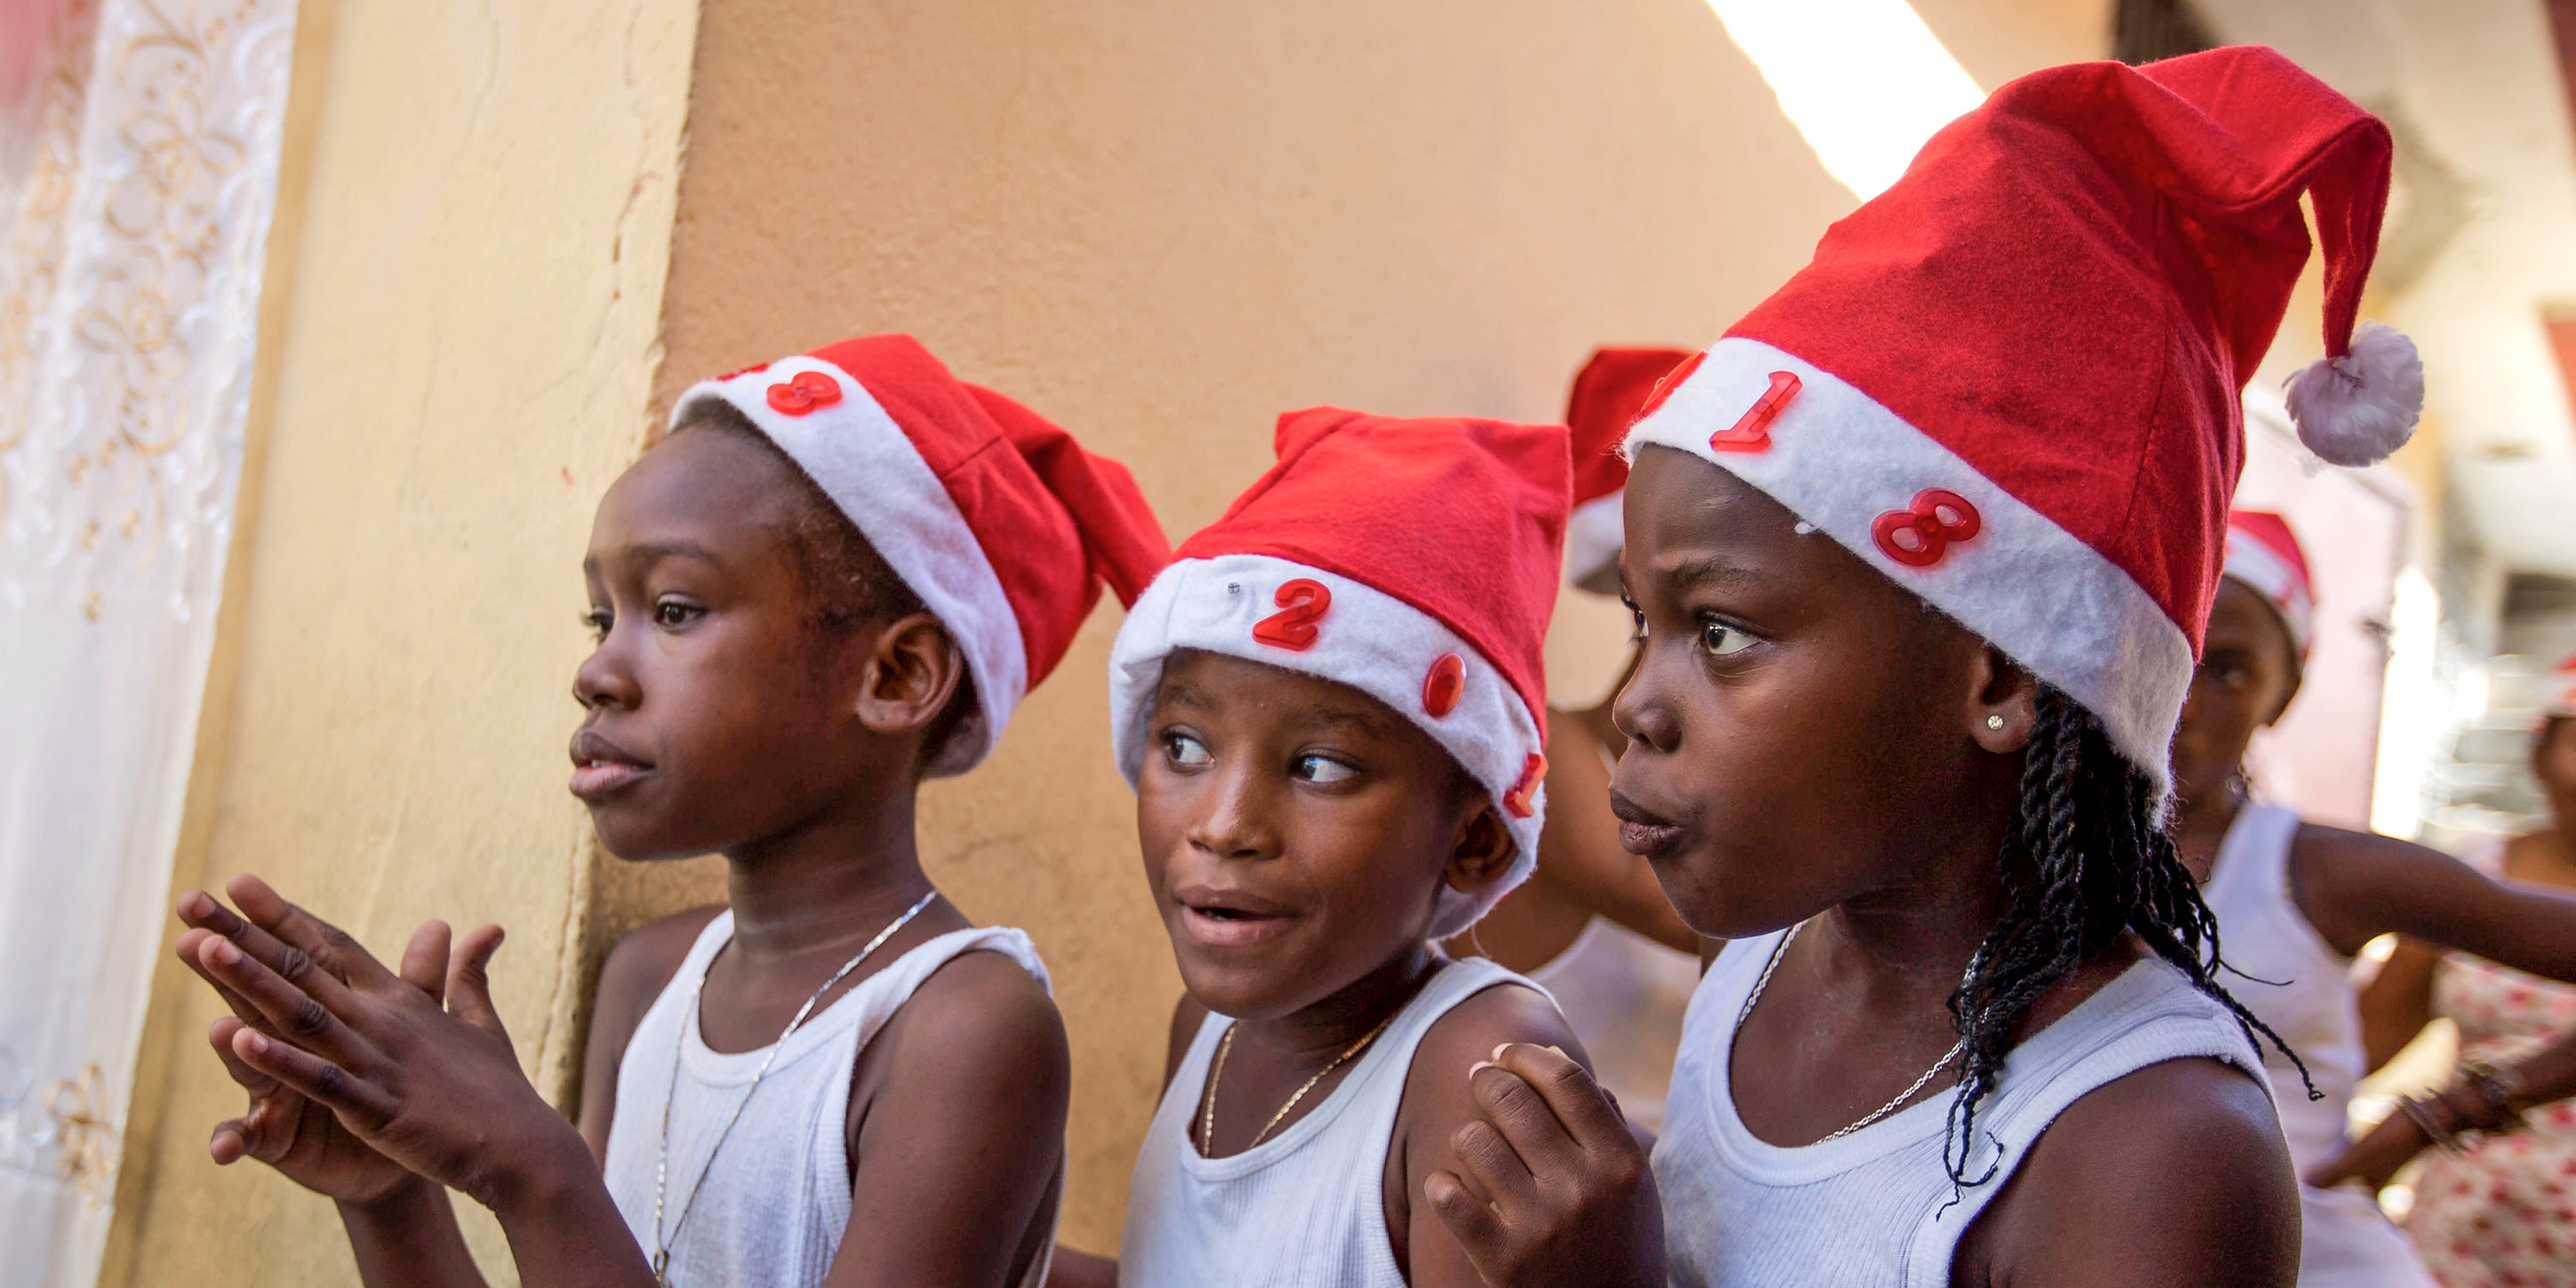 Drei Mädchen stehen am 22.12.2017 in Port-au-Prince (Haiti) während einer Weihnachtsveranstaltung hinter einer Bühne